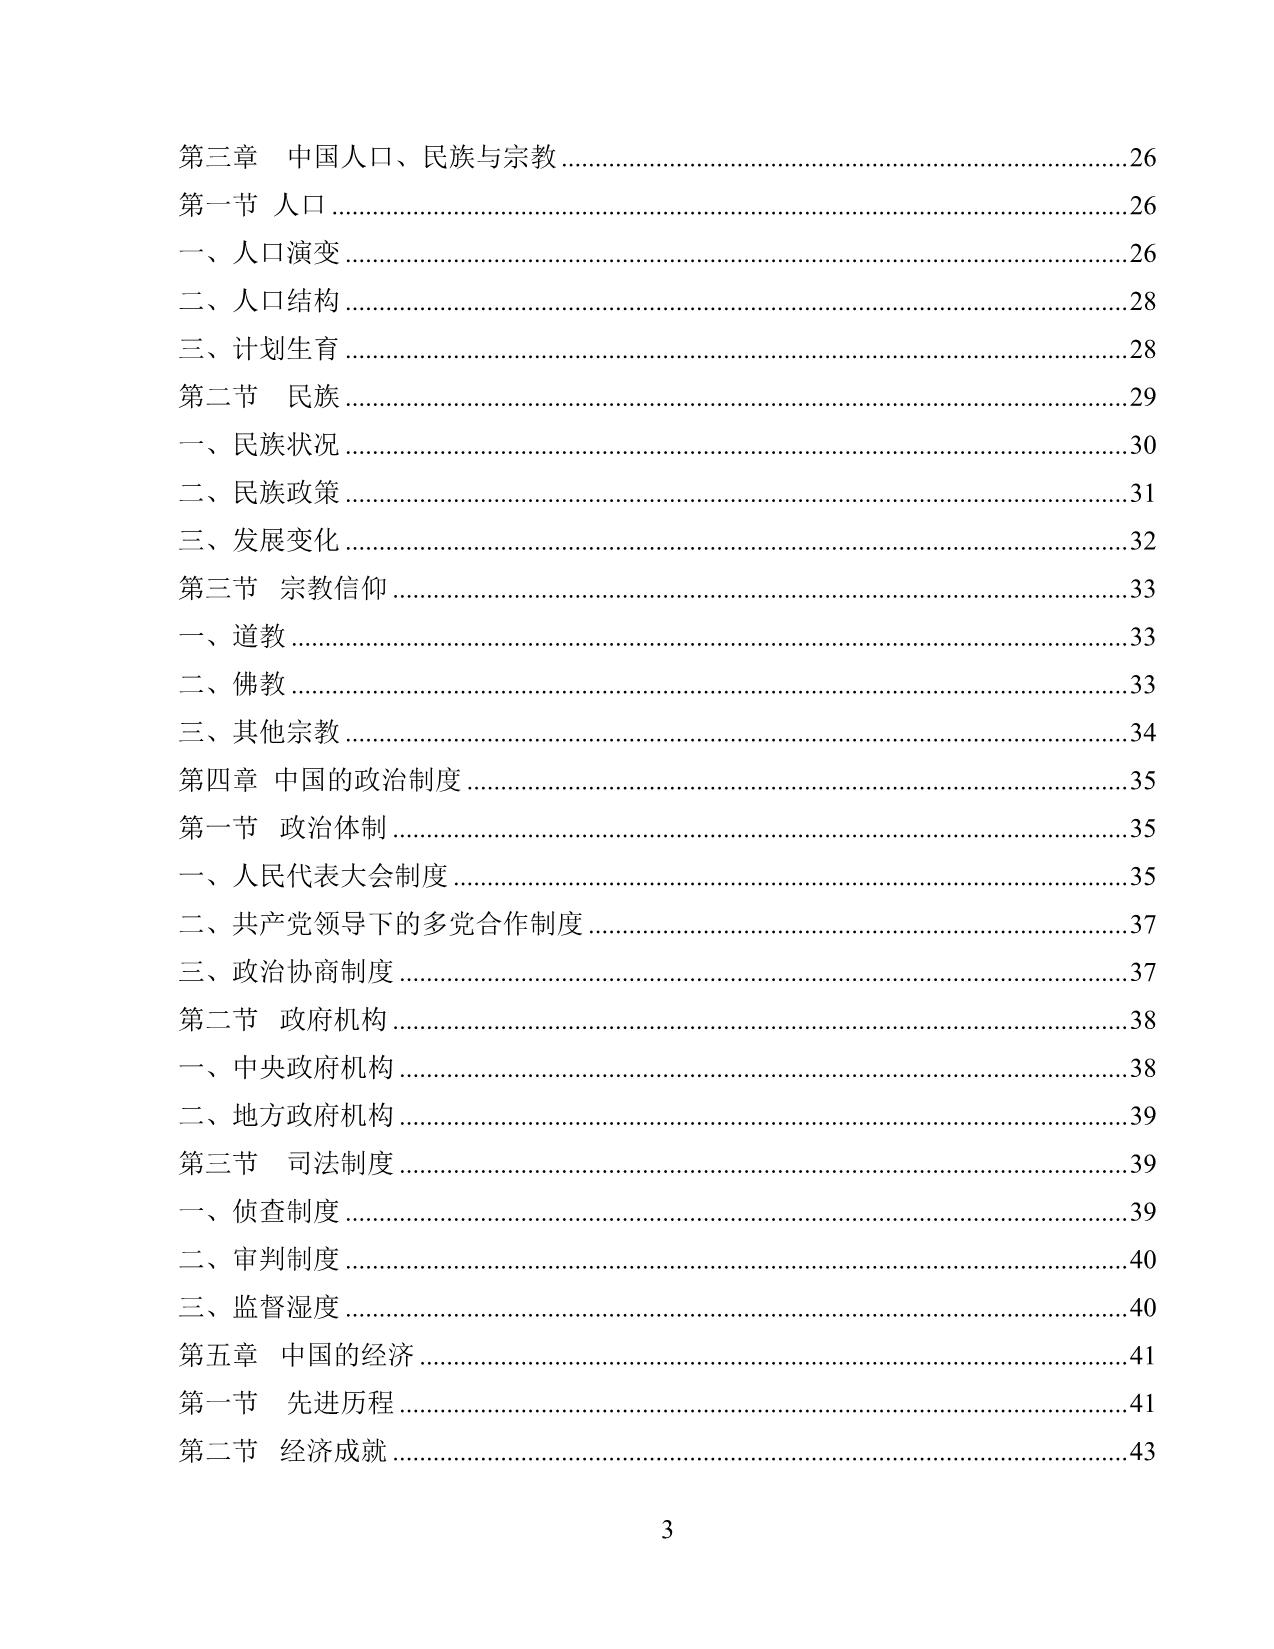 Giáo trình Đất nước học Trung Quốc trang 5